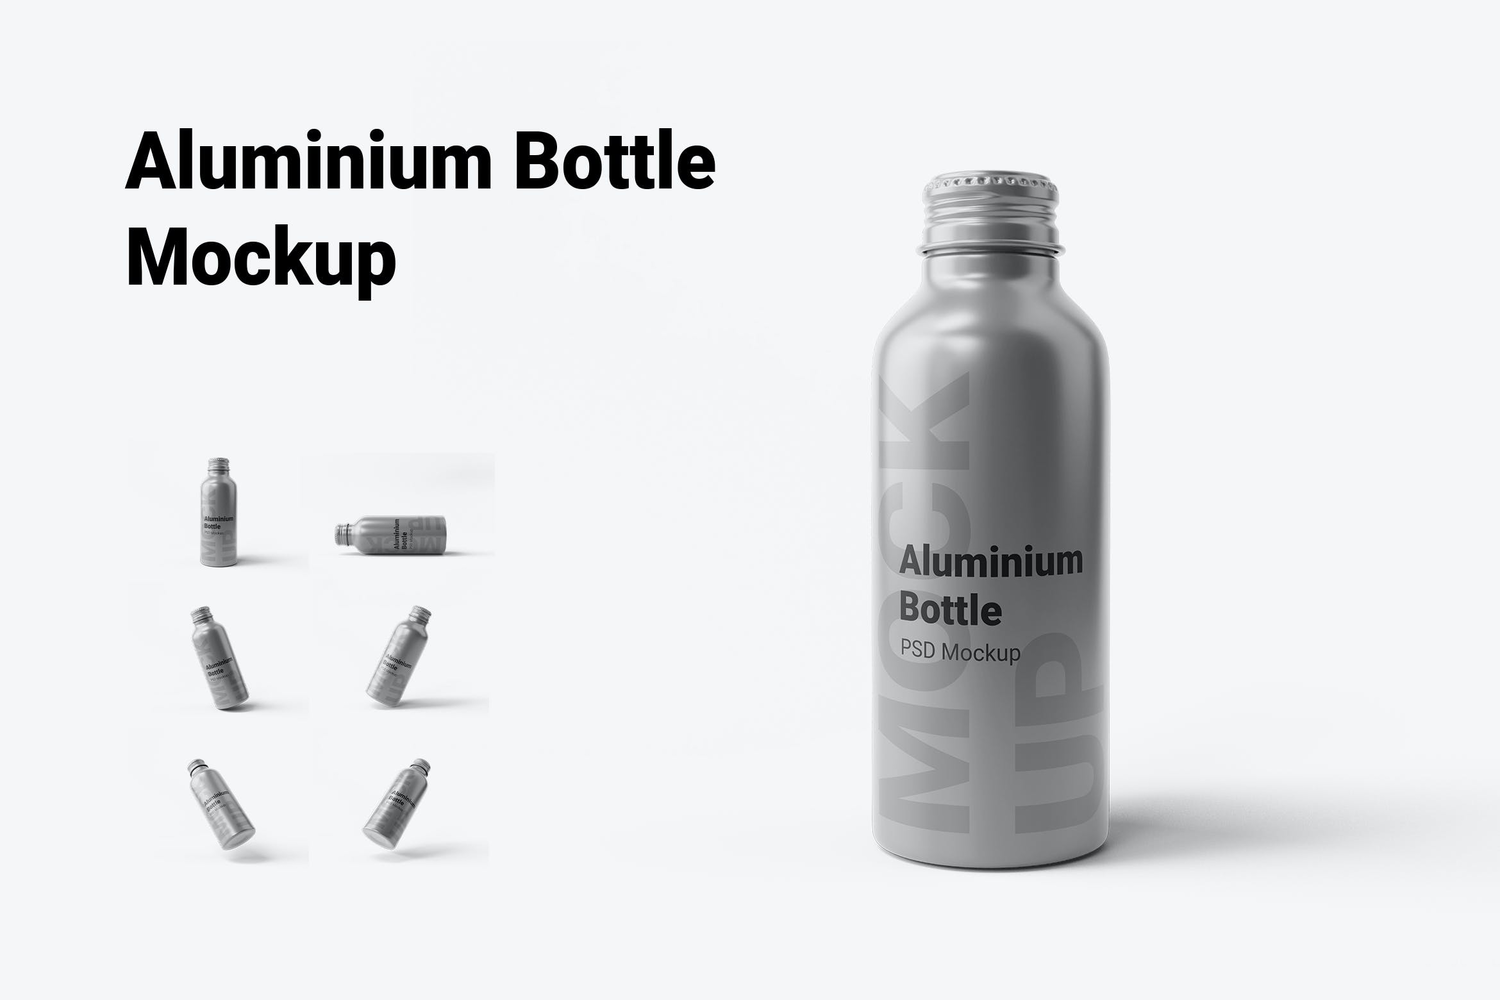 6258 铝瓶水瓶包装设计样机-Aluminium Bottle Mockup